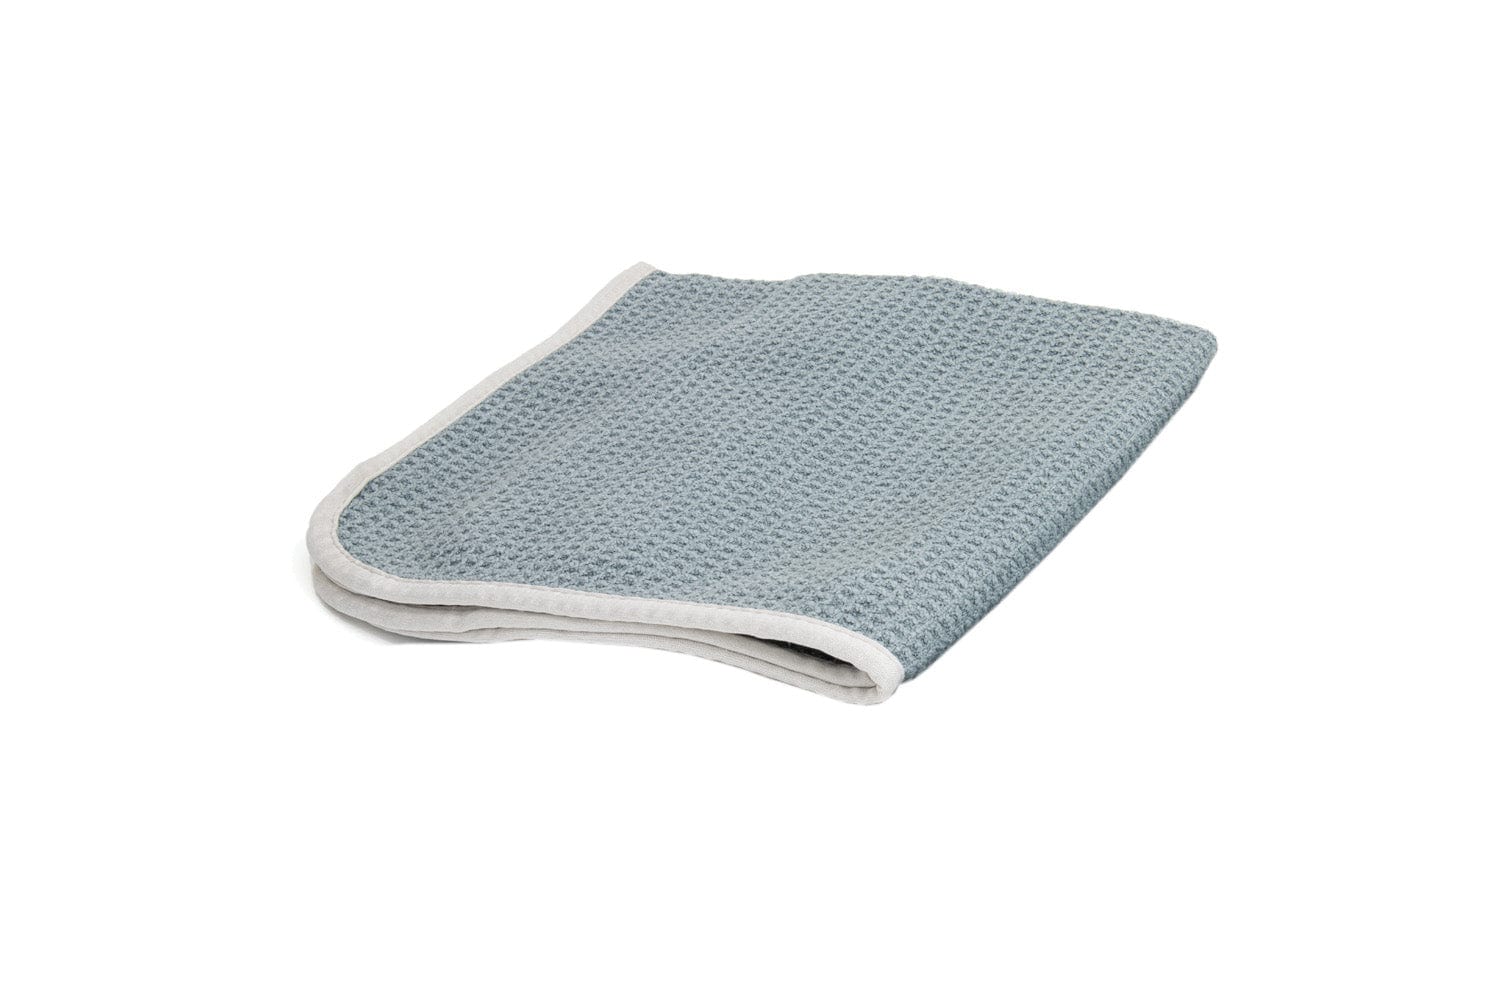 Autofiber Bulk Towel Gray FULL CASE [No Streak Freak] 400 gsm Waffle Weave 16"x16" - 140/case